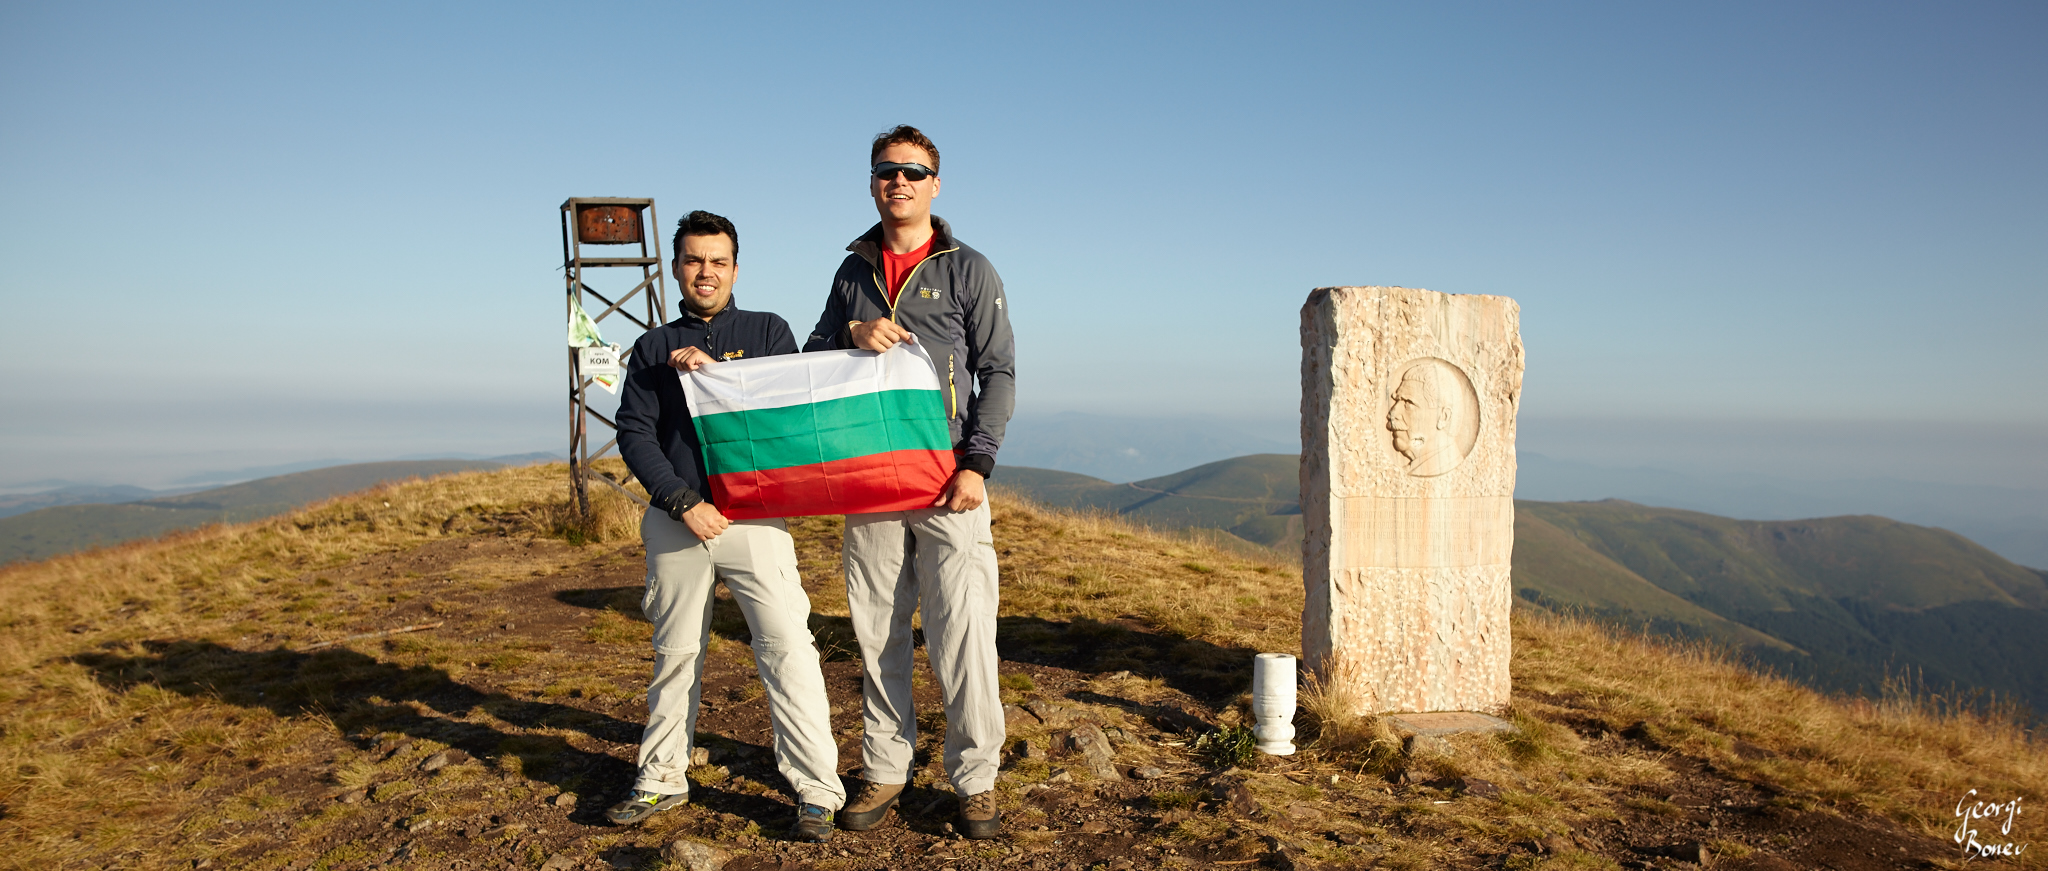 Mitko & Georgi at Kom peak, Bulgaria